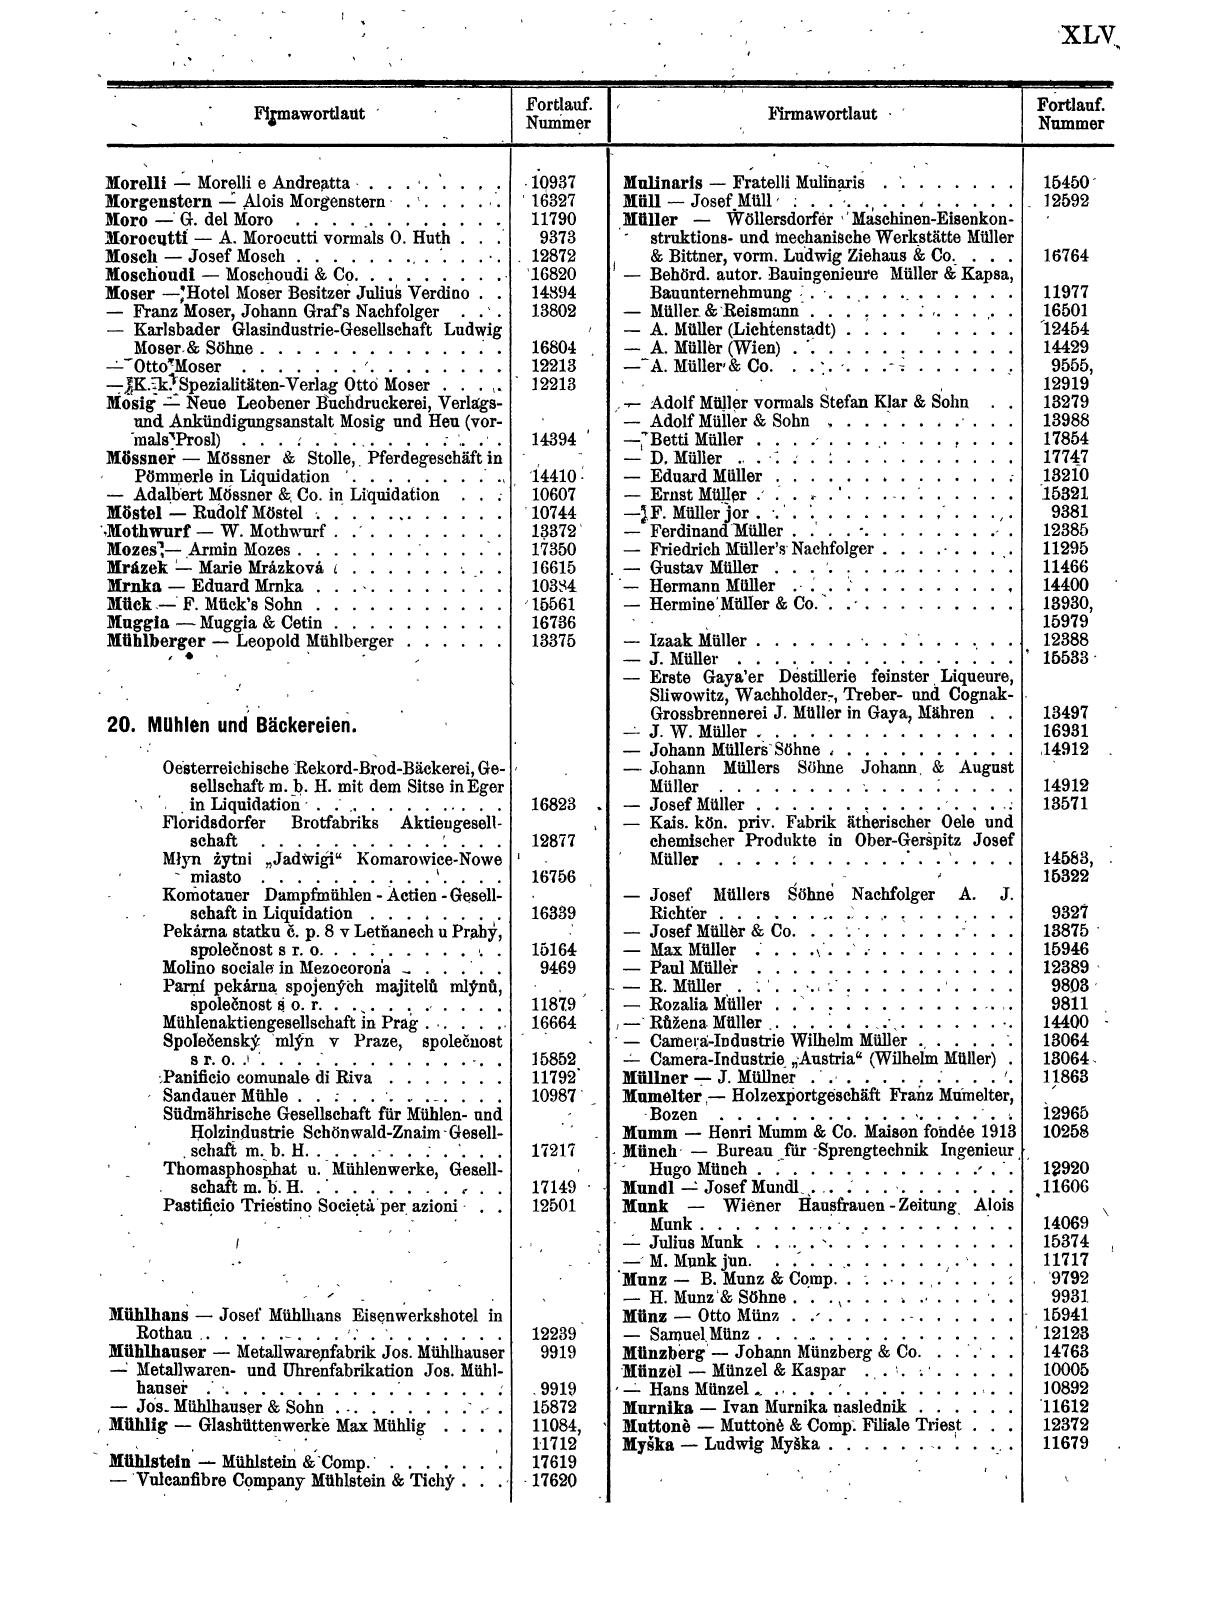 Zentralblatt für die Eintragungen in das Handelsregister 1913, Teil 2 - Seite 49